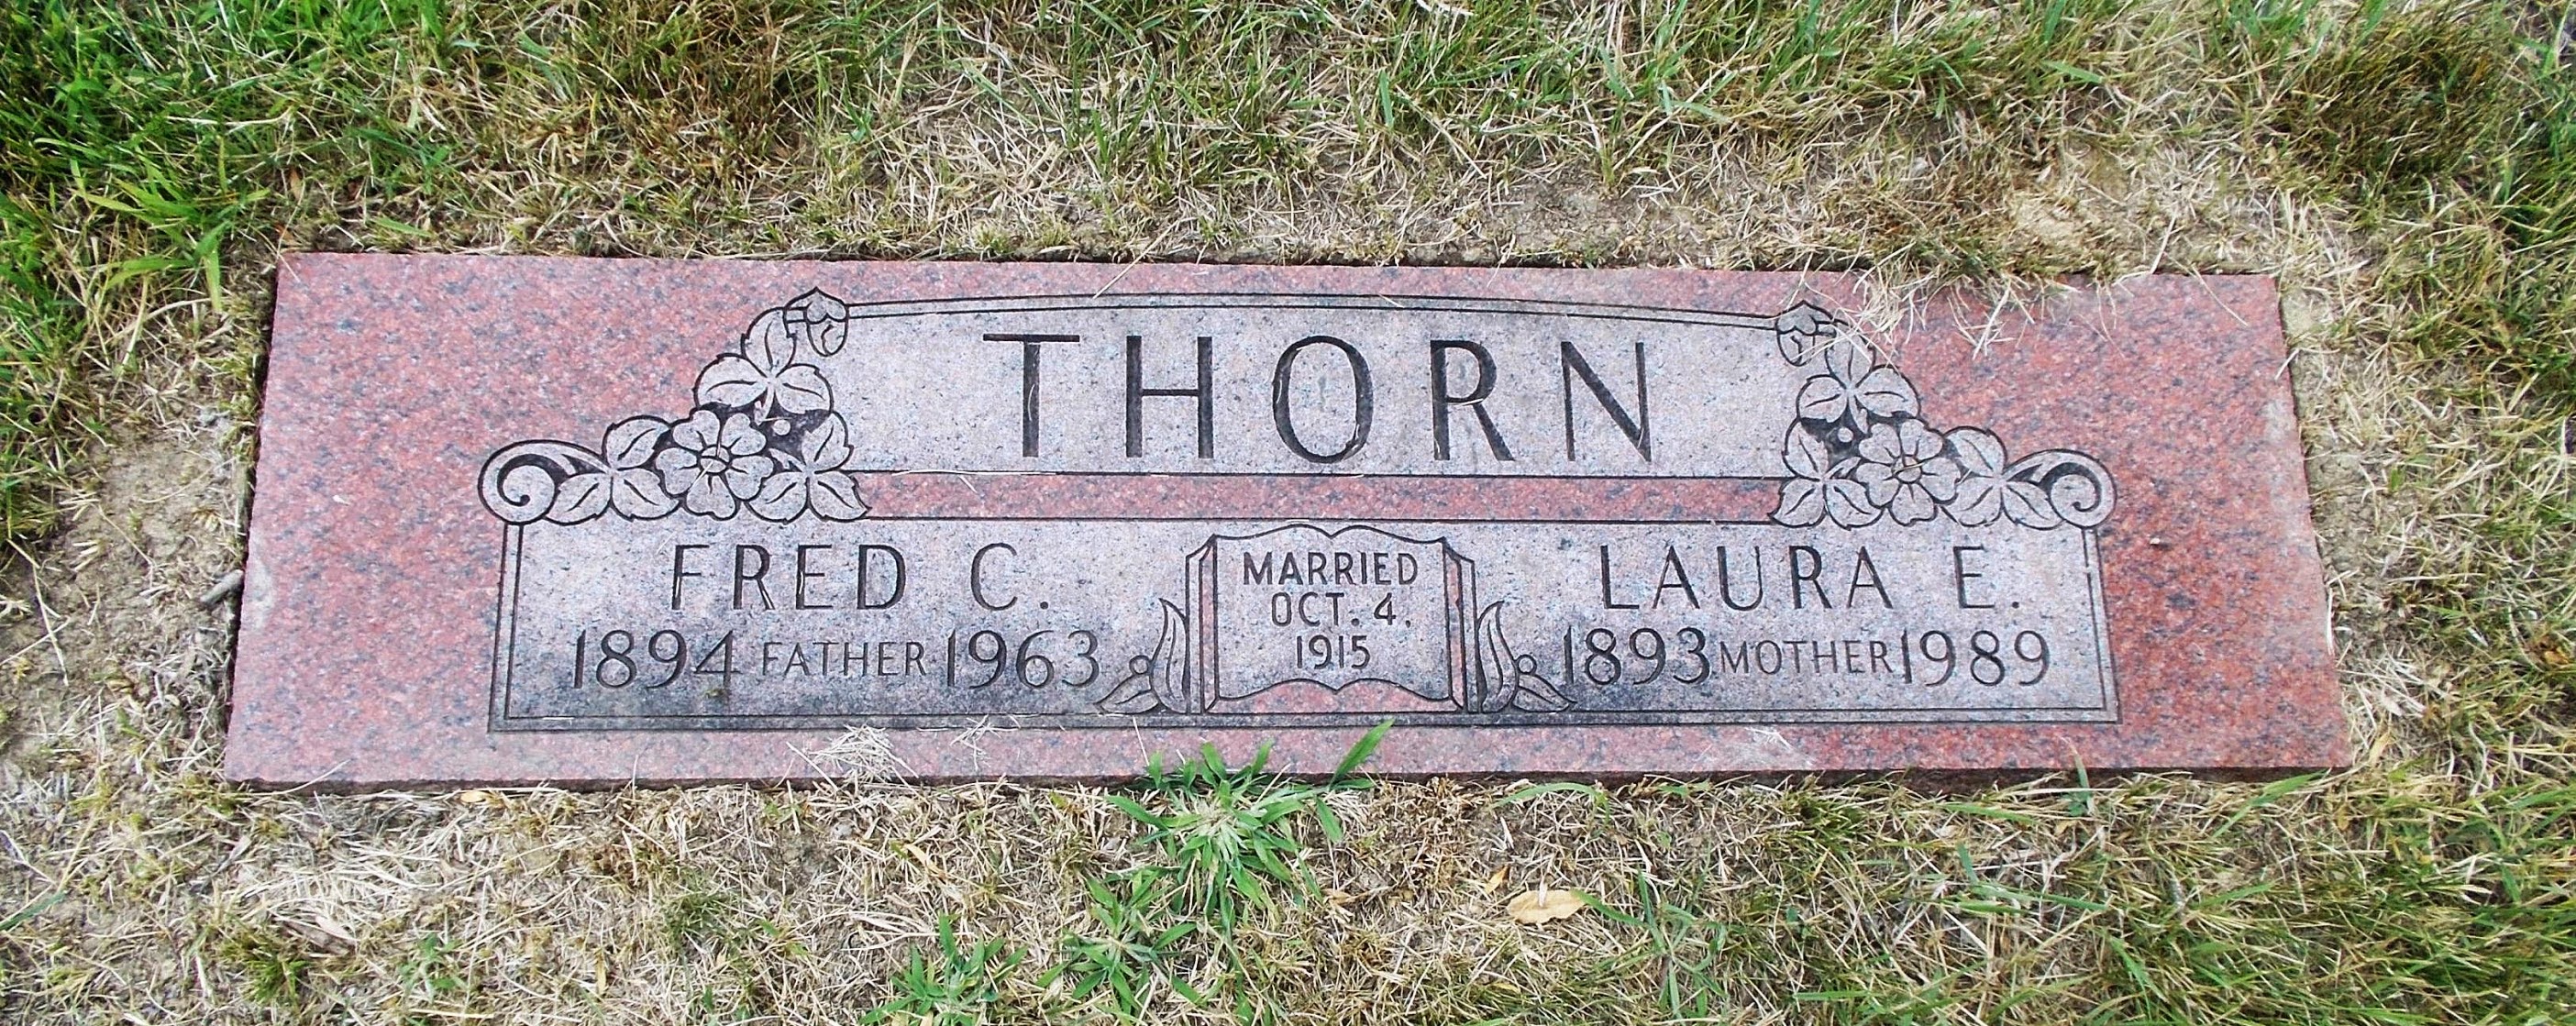 Laura E Thorn